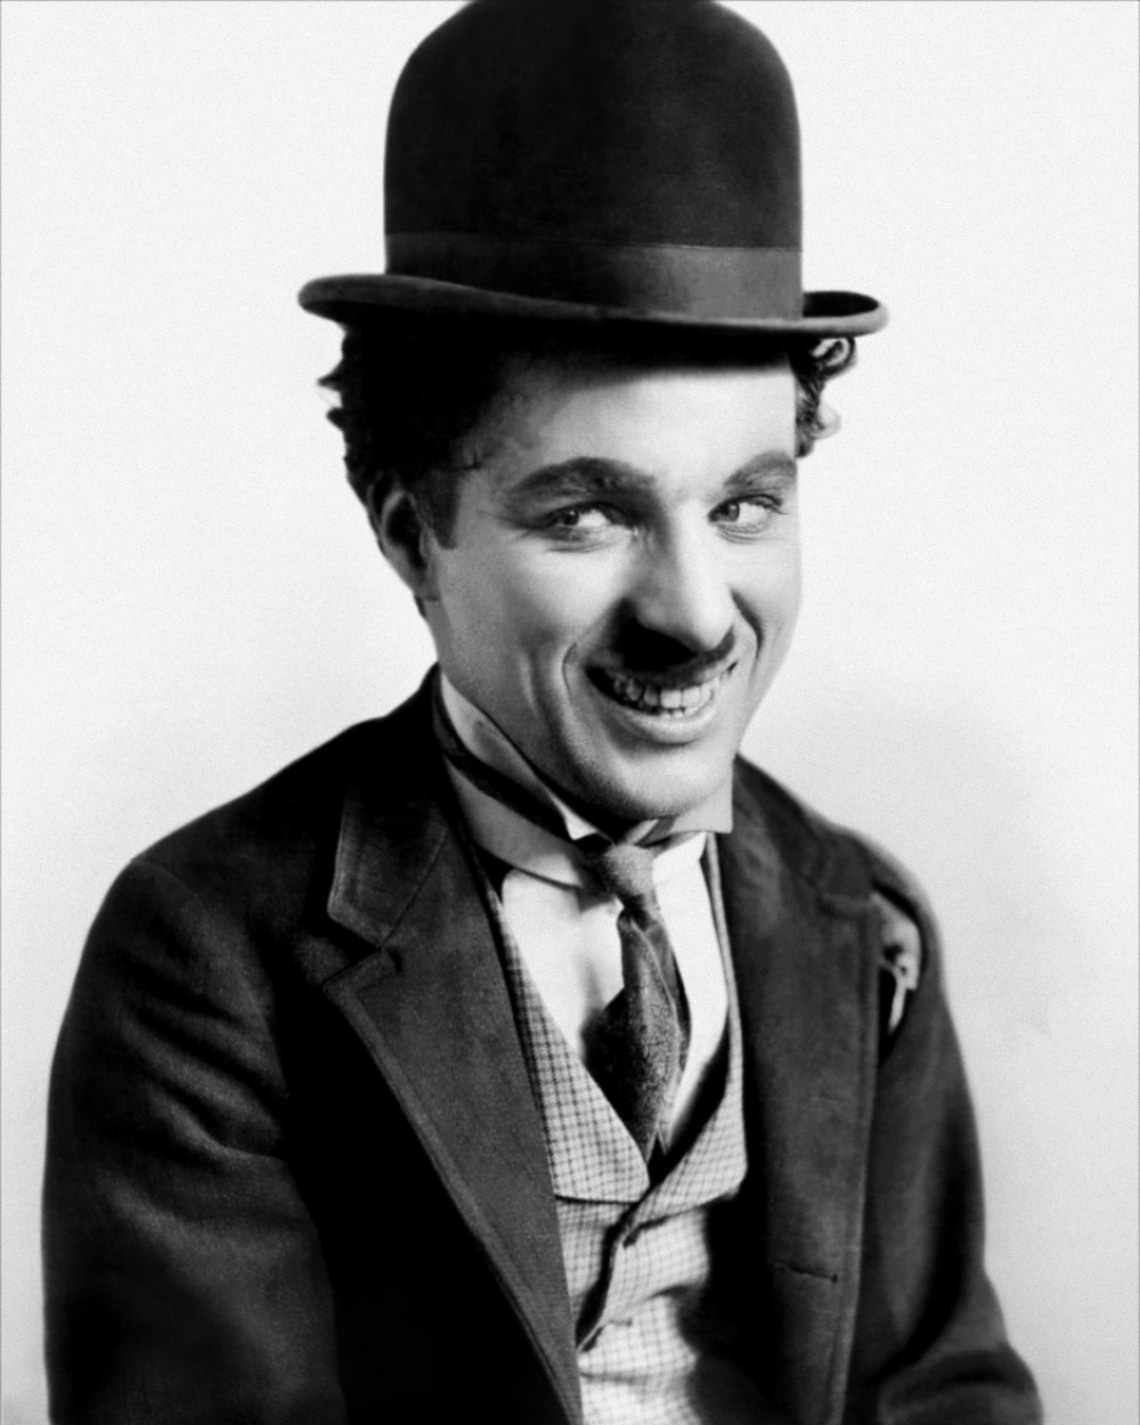 Charlie Chaplin neve is összefüggésbe került a botránykönyvvel